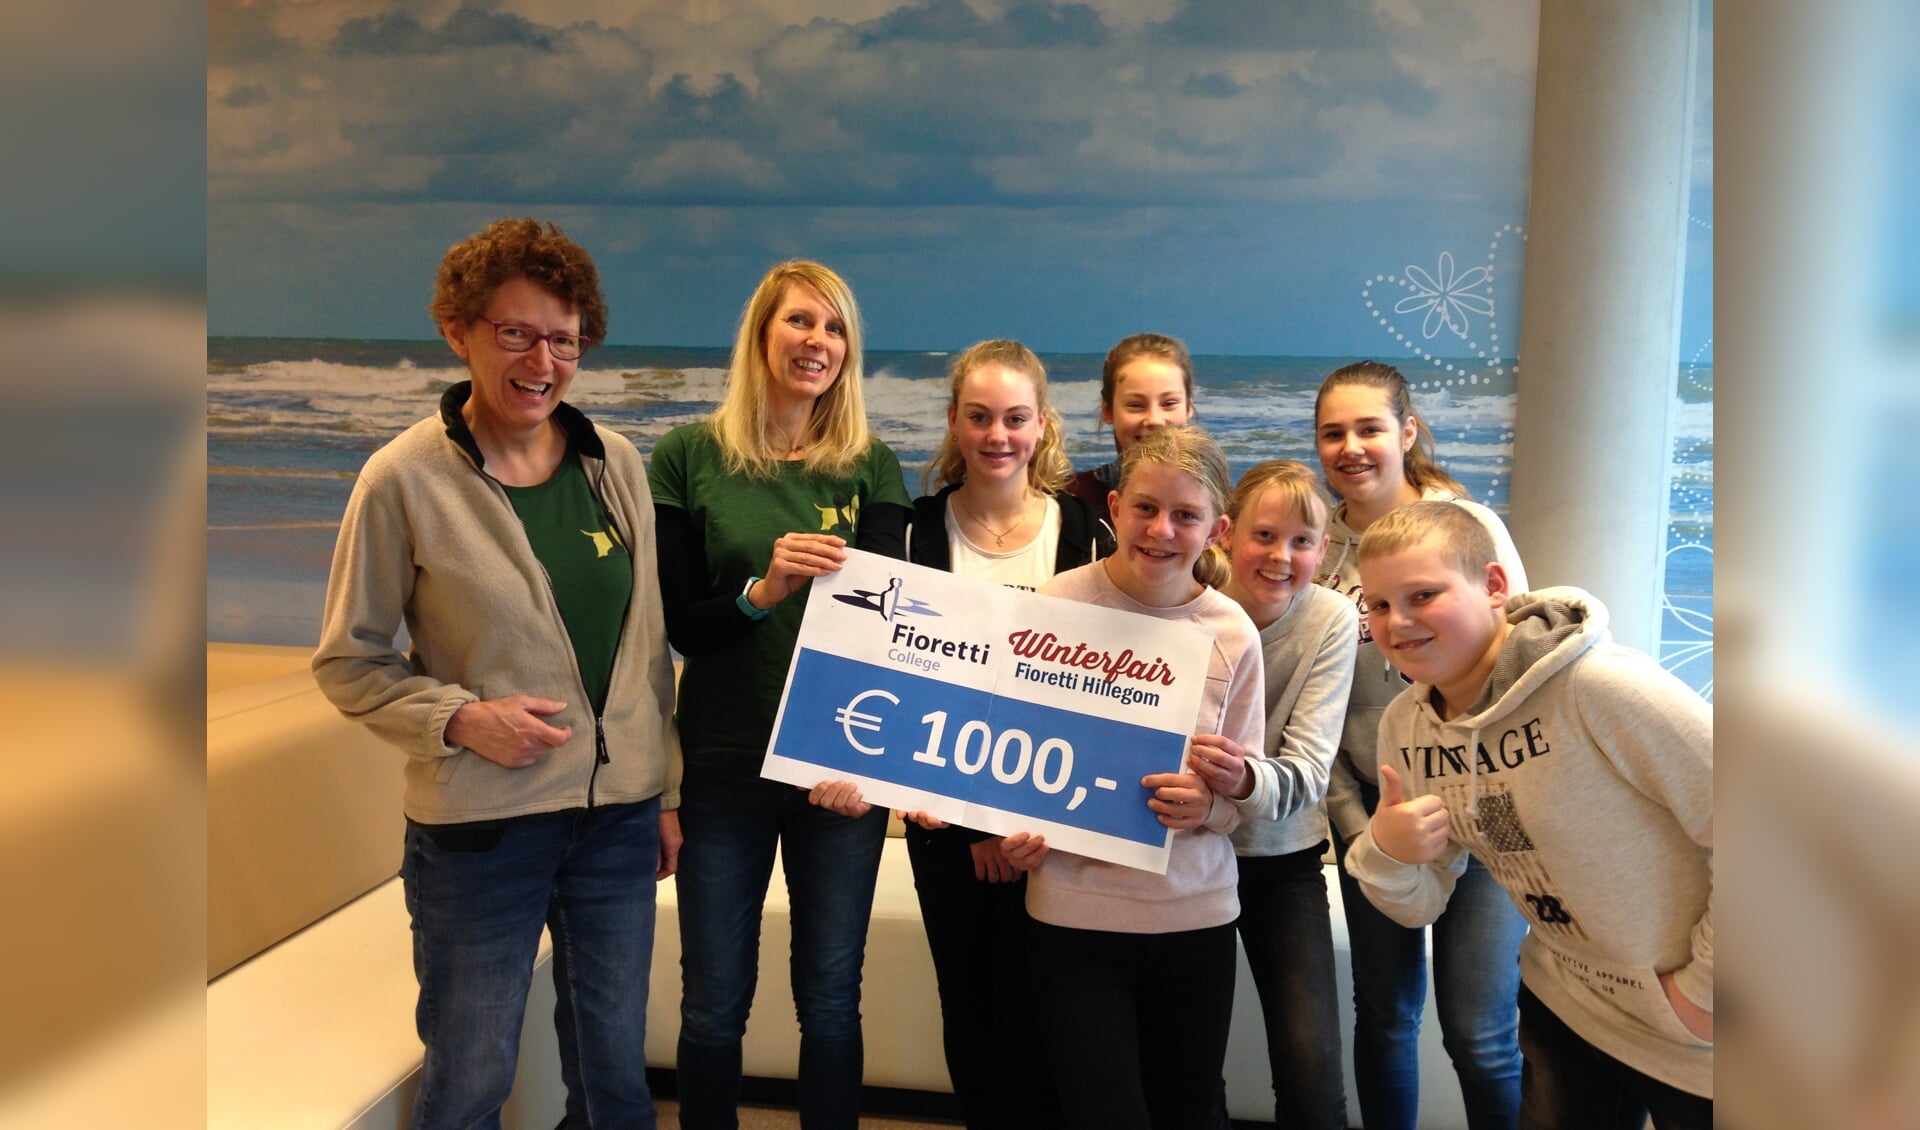 De winterfair leverde 1000 euro op voor het asiel!